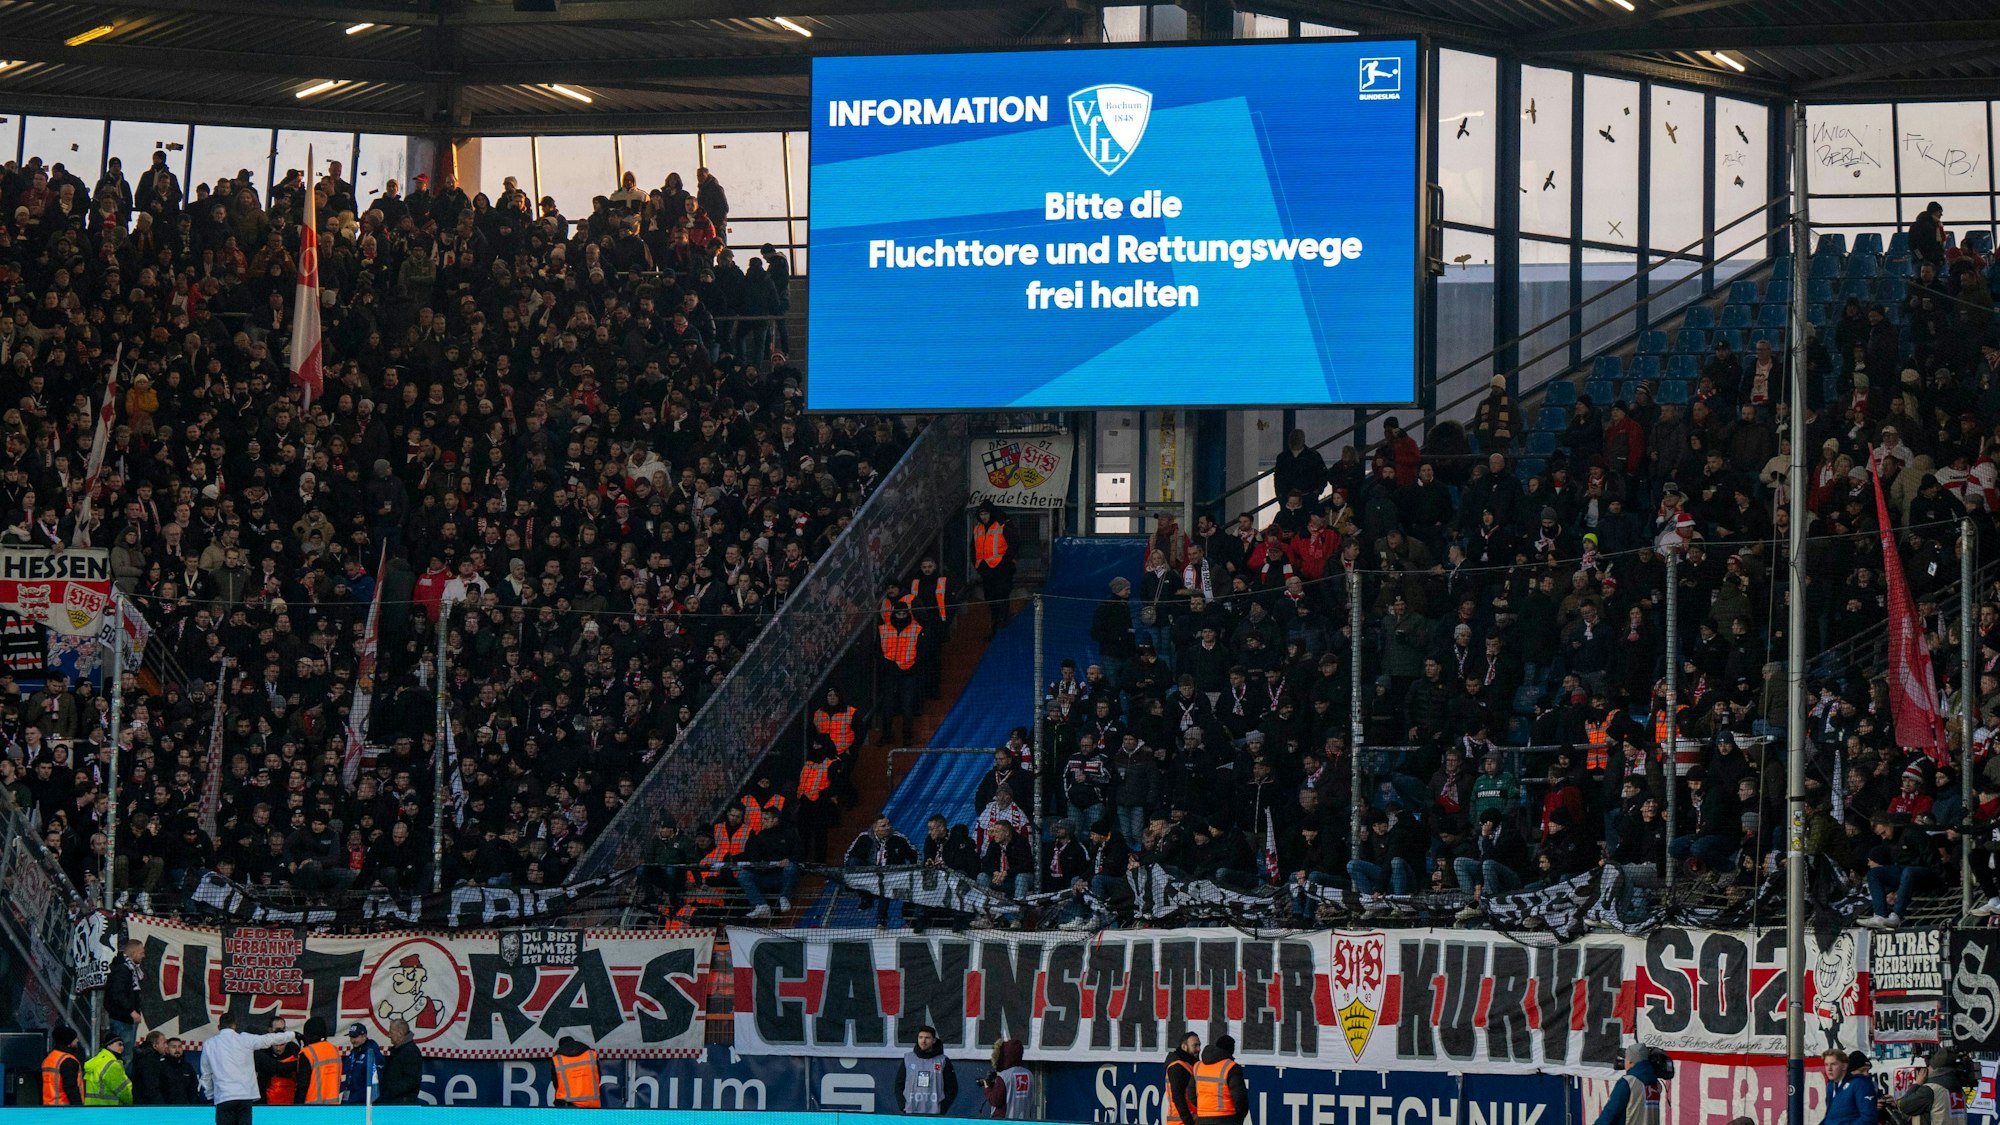 Im Stuttgarter Fanblock hängt eine Zaunfahne. Auf der Anzeigetafel ist zu lesen: „Bitte die Fluchttore und Rettungswege frei halten.“